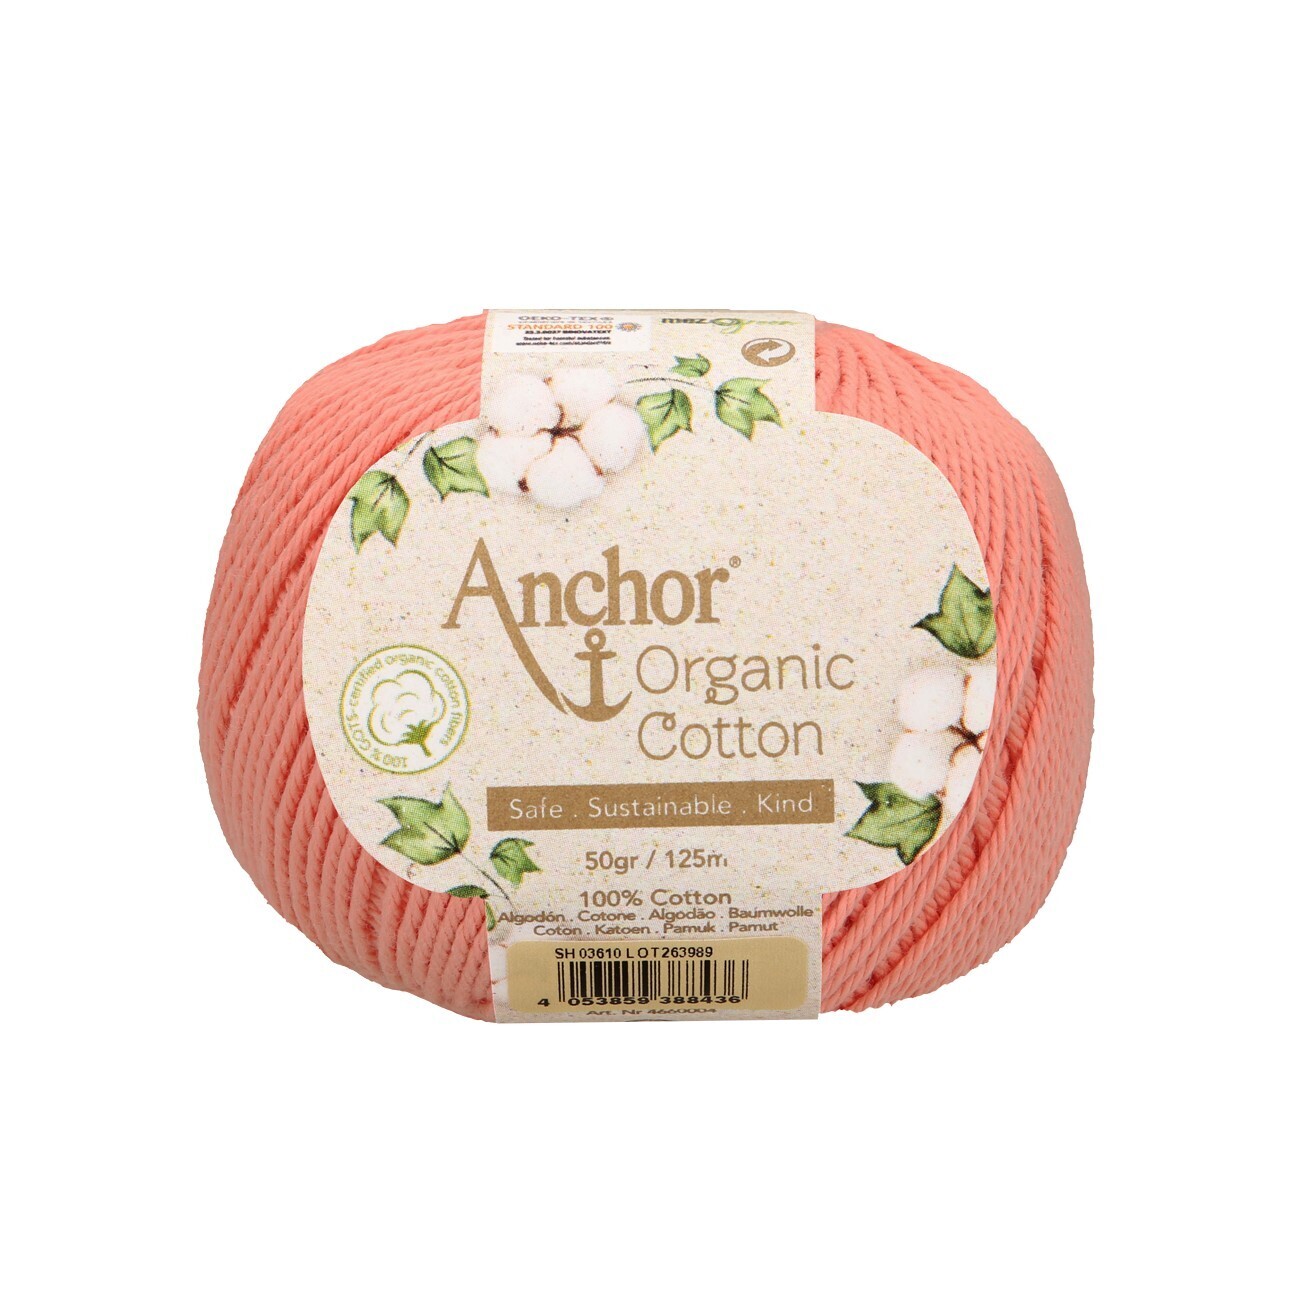 Anchor Organic Cotton #03610